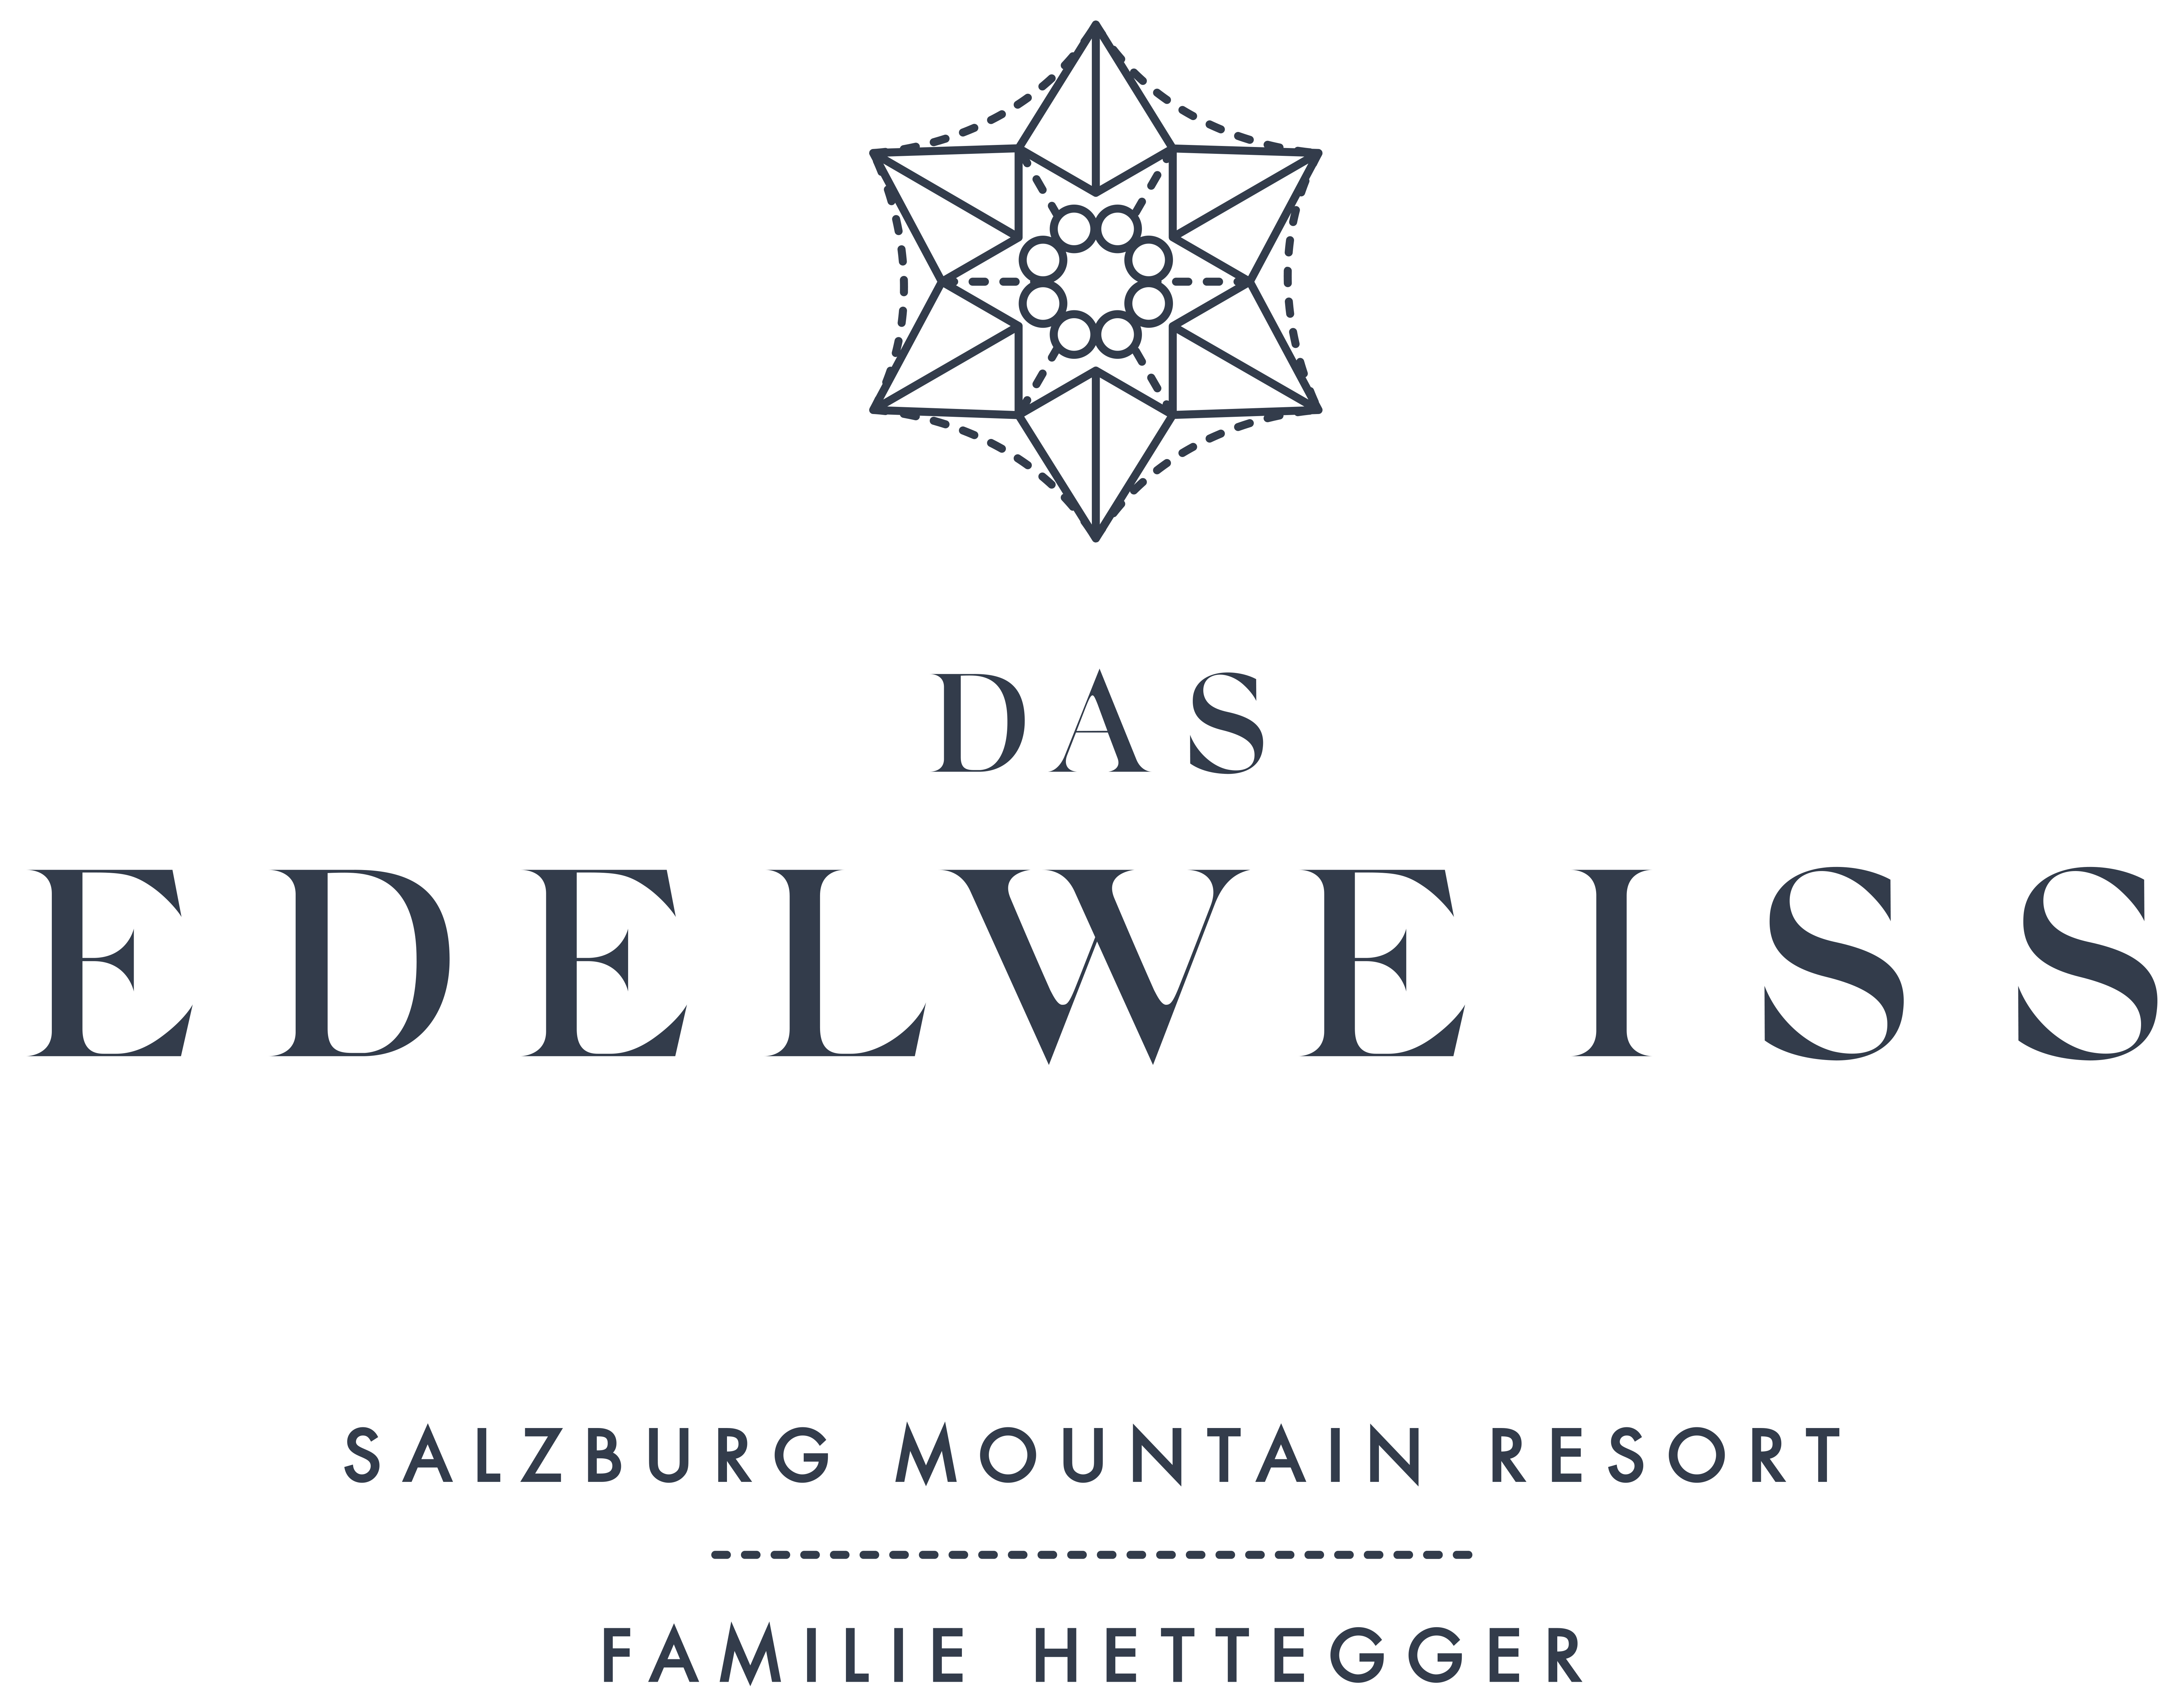 Эдельвейс текст. Эдельвейс логотип. Das Edelweiss - Salzburg Mountain Resort. Эдельвейс в гостинице логотип. Edelweiss Hotel Resort logo.